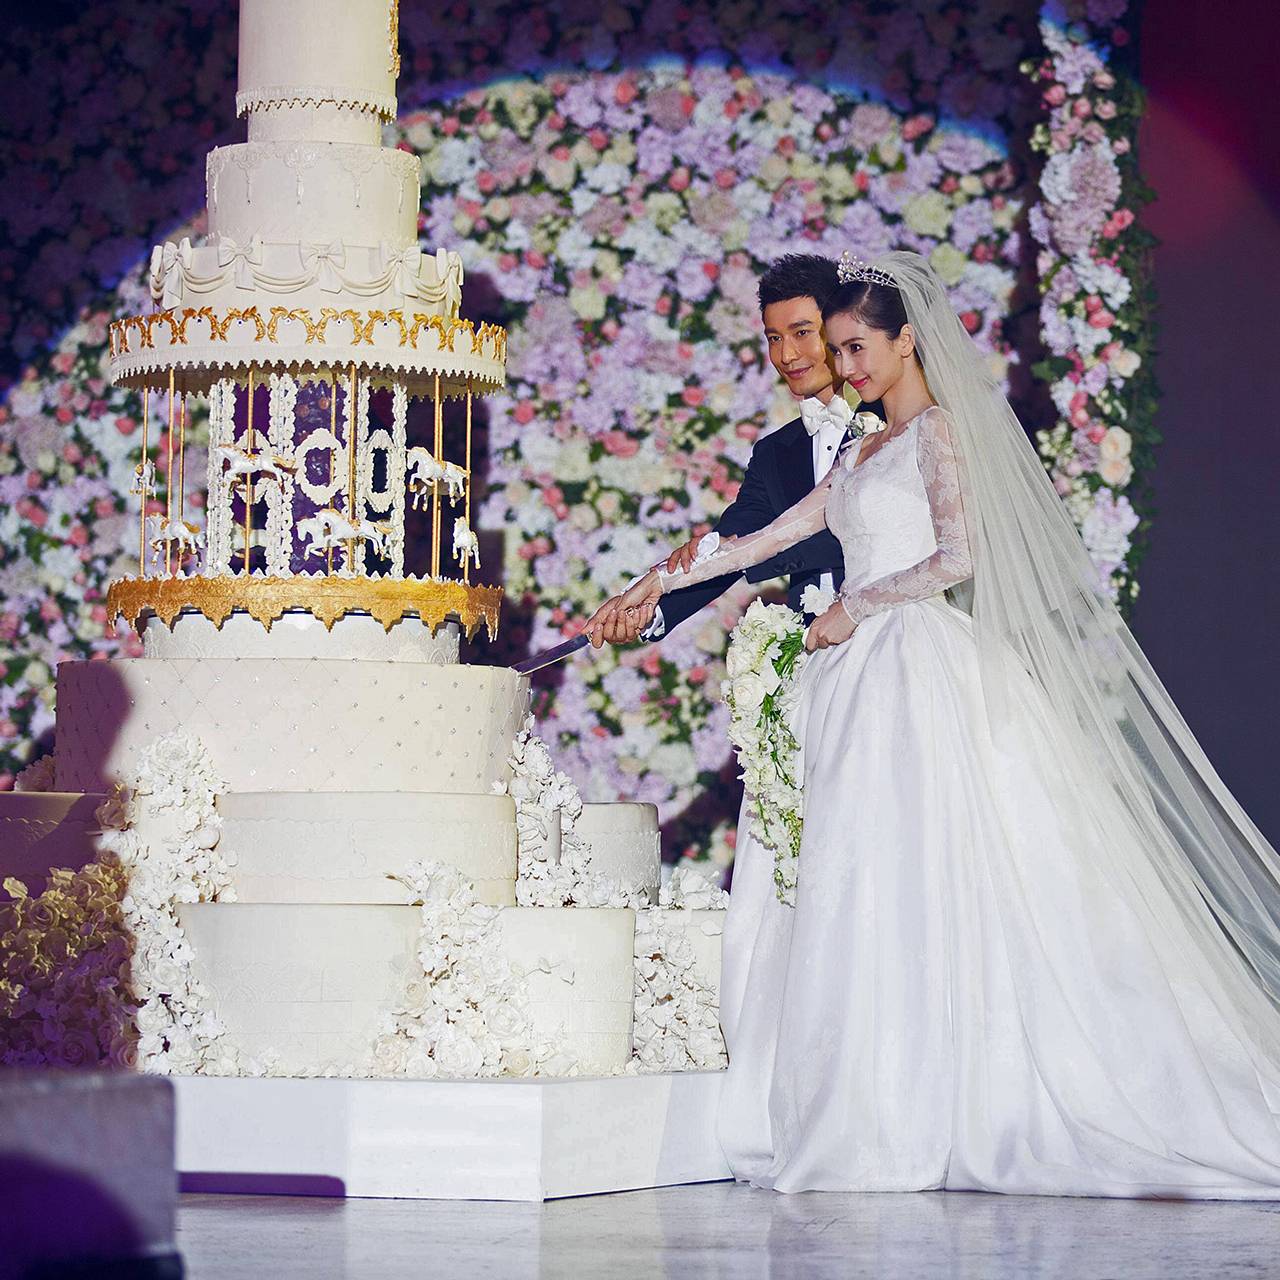 Как проходит корейская свадьба? 💍😊 • В Корее принято дарить деньги, поэт | Instagram